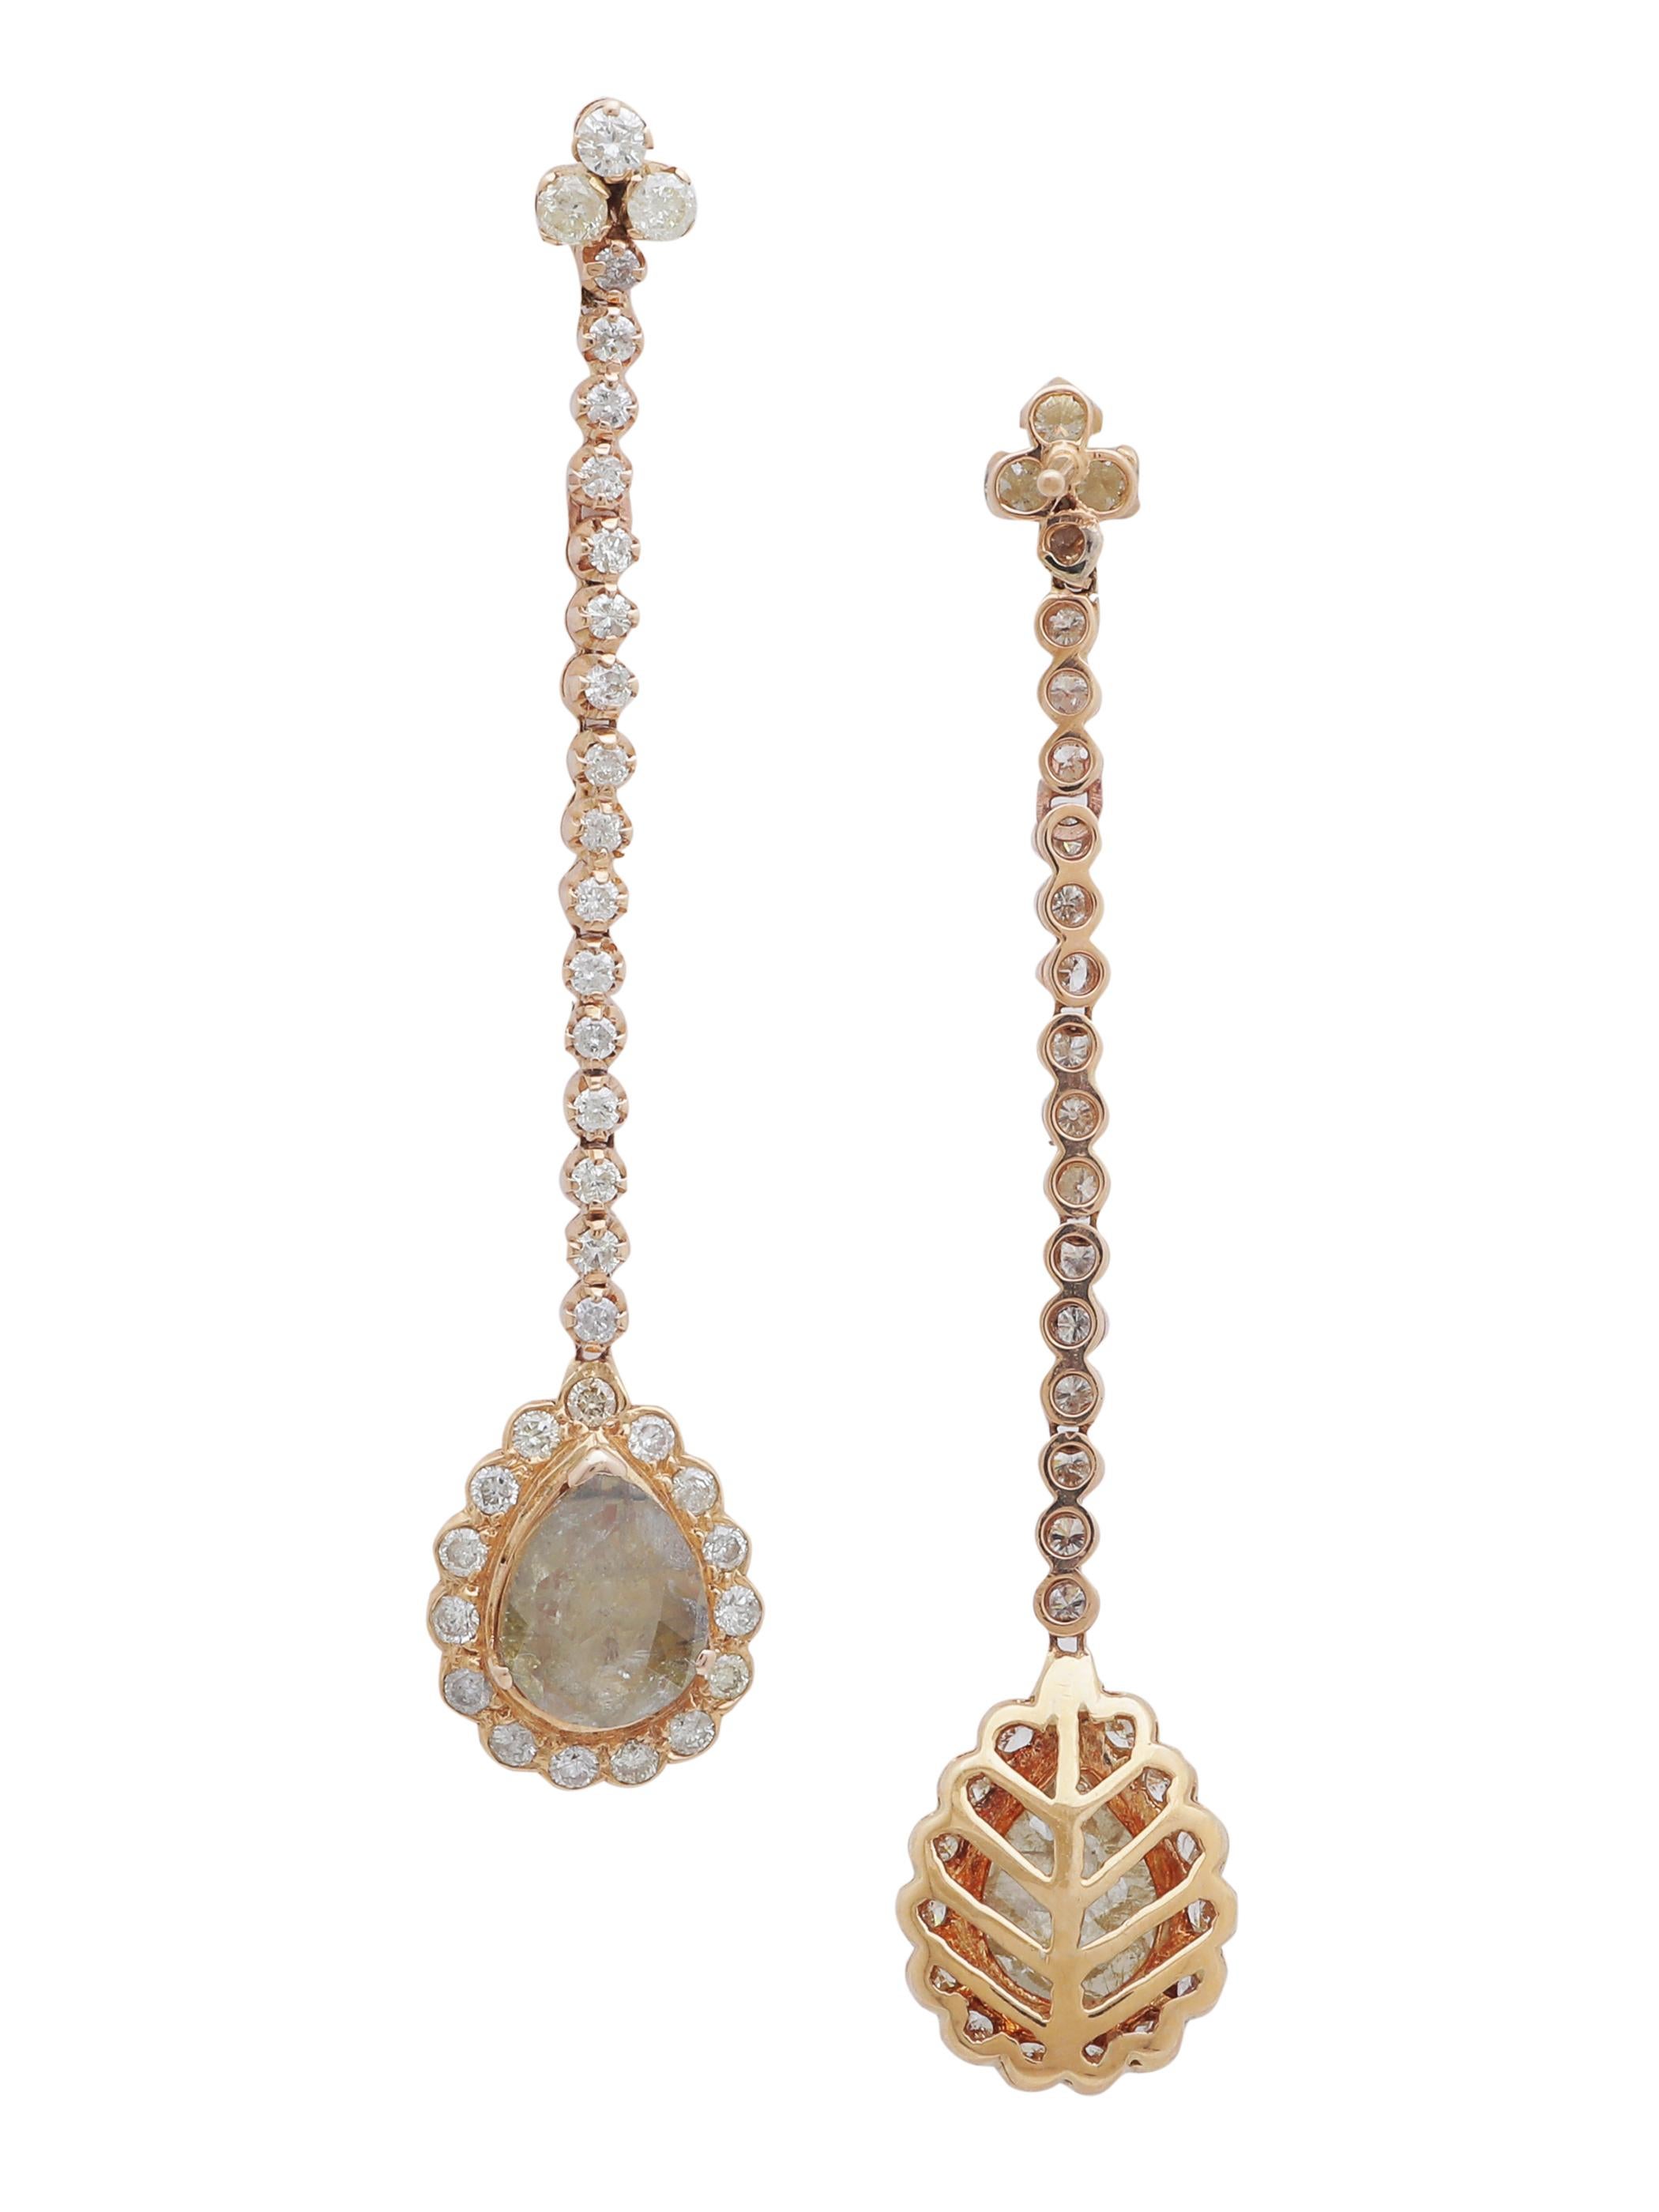 Pear Cut Dangling Diamond Pear Shape Earring Set in 18 Karat Yellow Gold For Sale